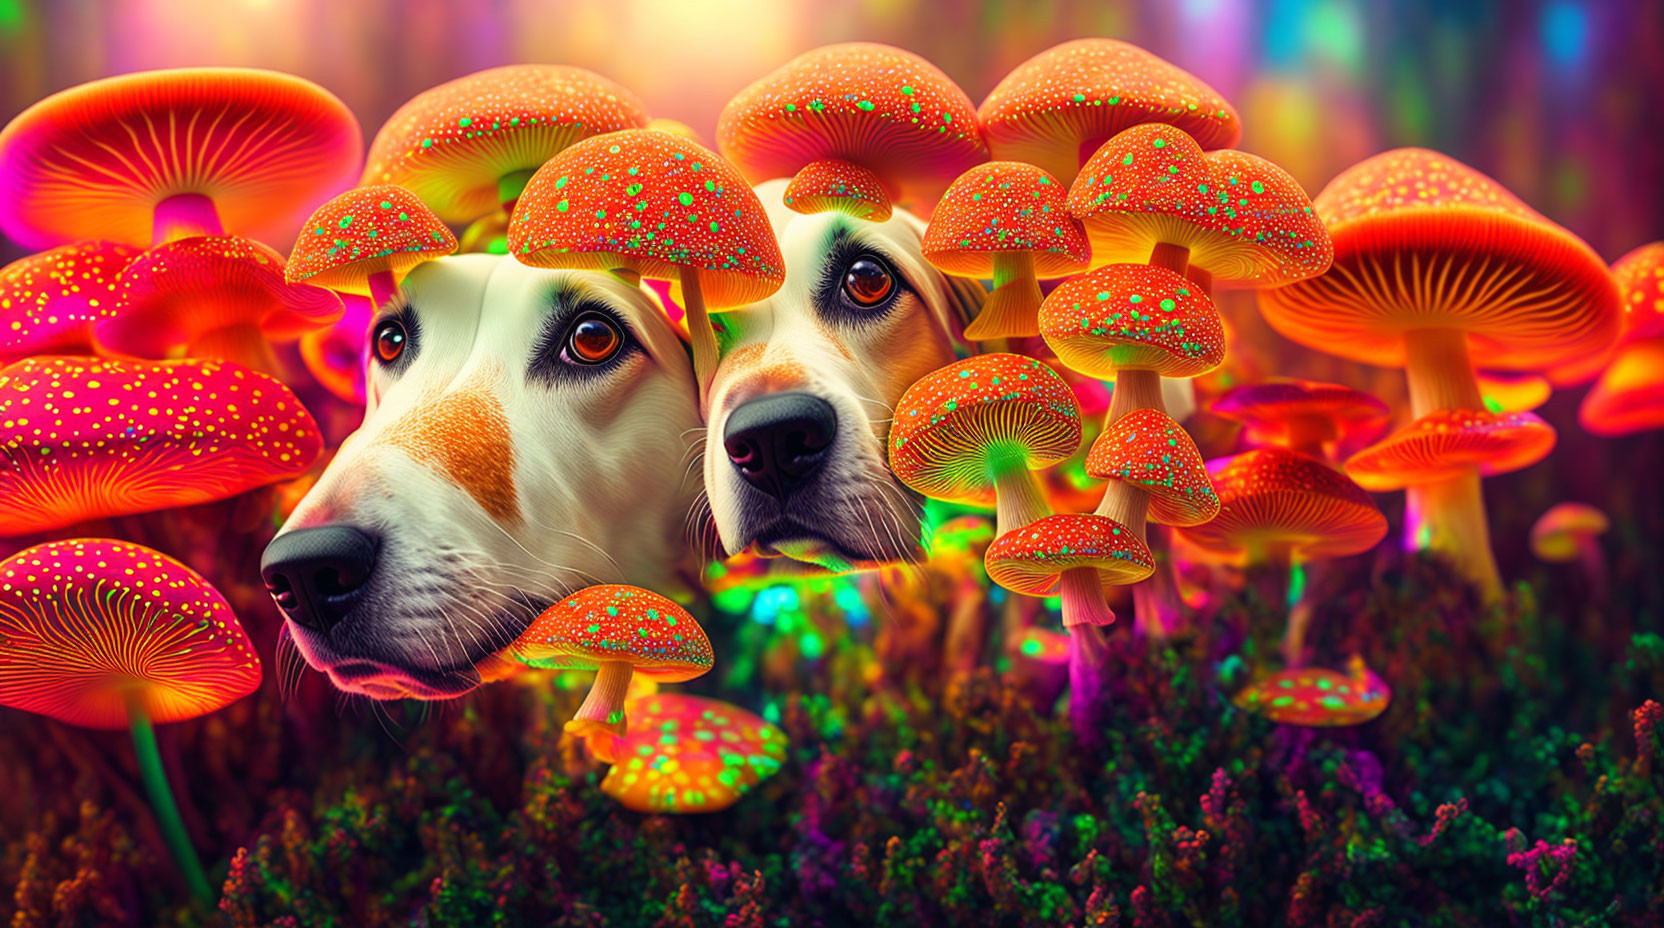 Whimsical dog faces blend into vibrant mushroom scene